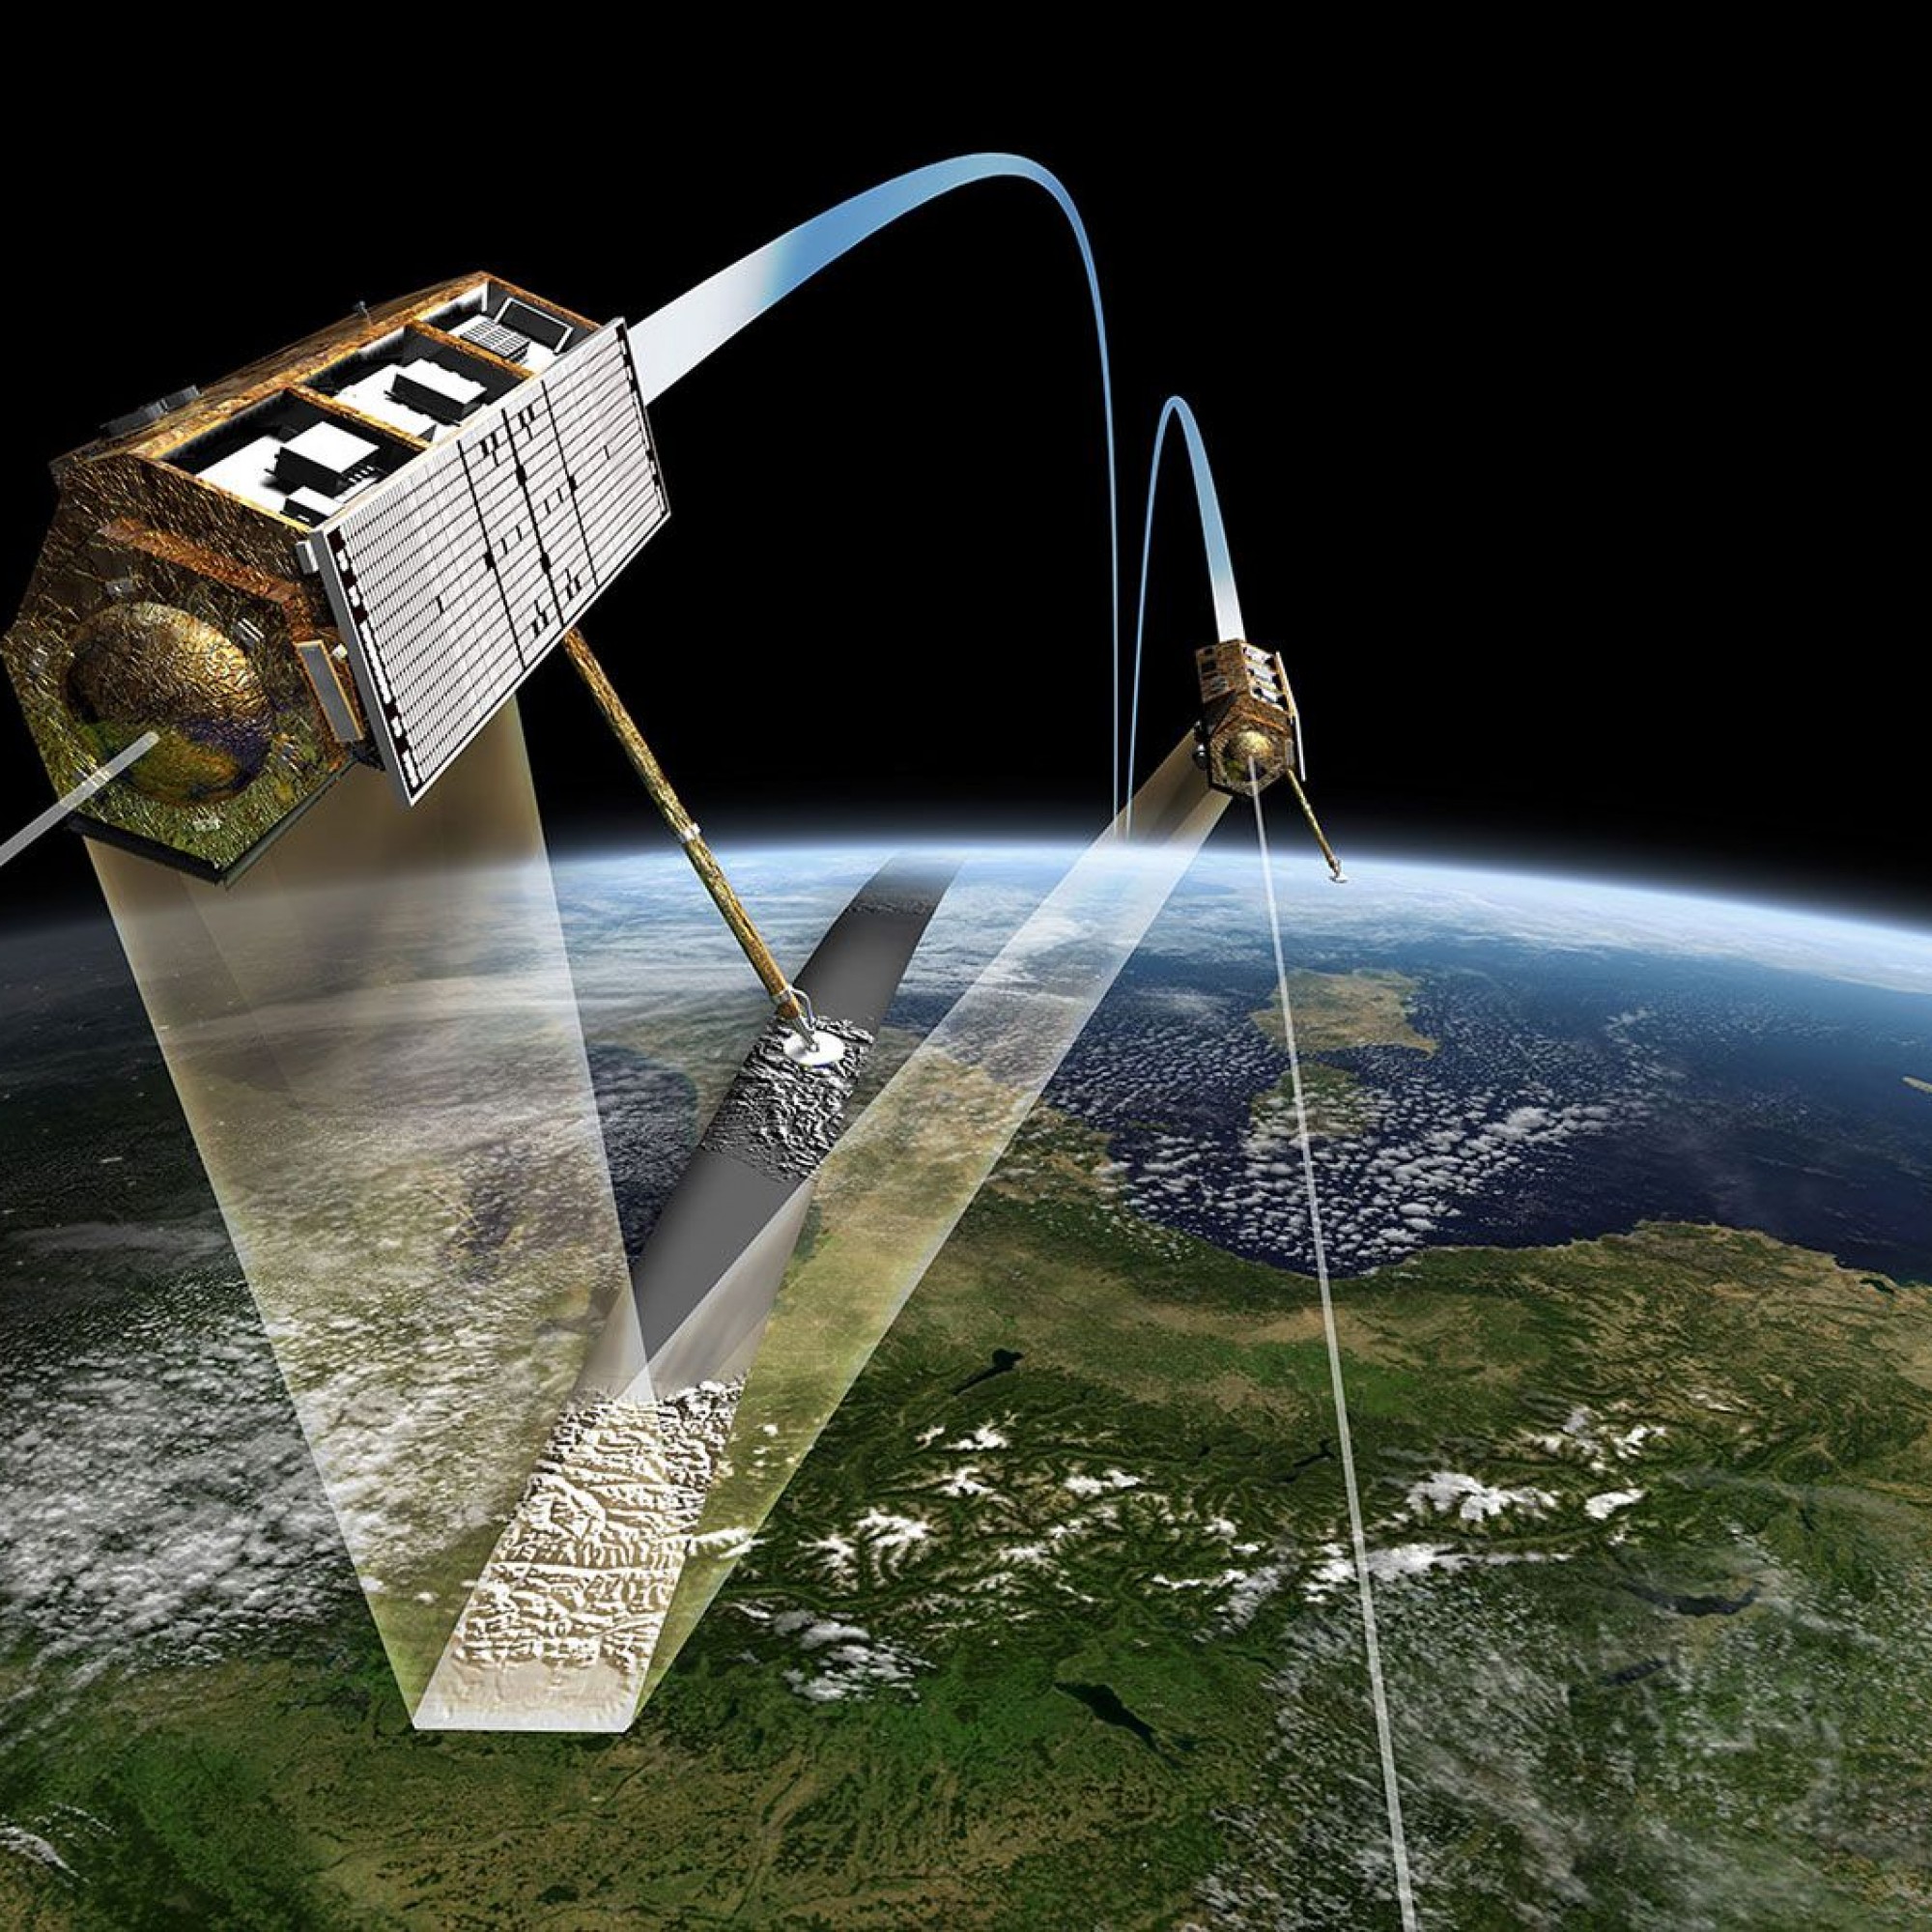 Satellitenzwillinge "TerraSAR_X" und "TanDEM-X".